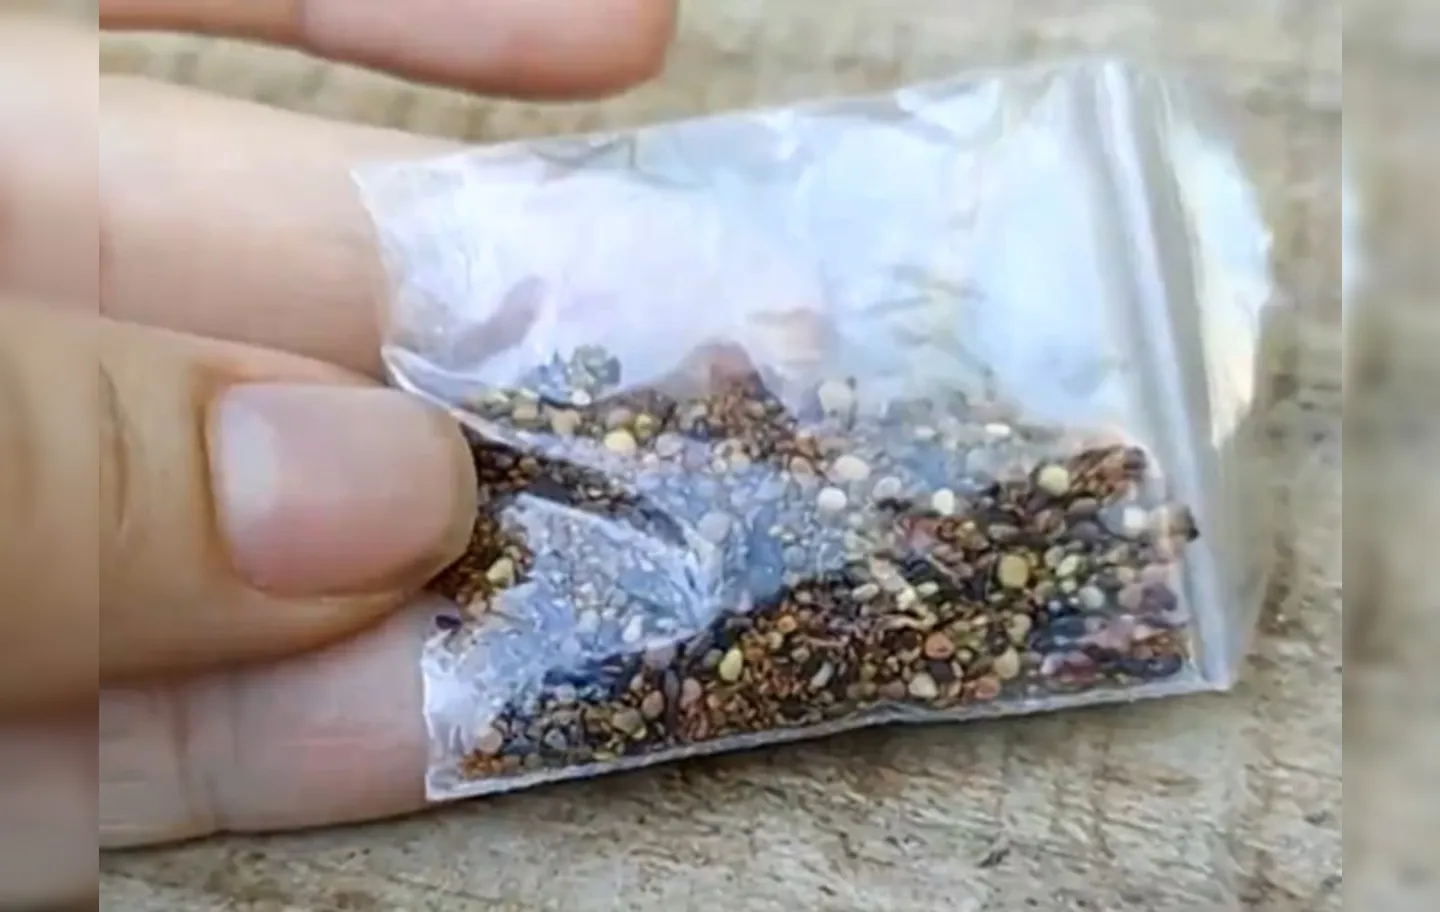 Sementes são entregues pelos Correios dentro de envelope plástico | Foto: Reprodução | TV Anhanguera